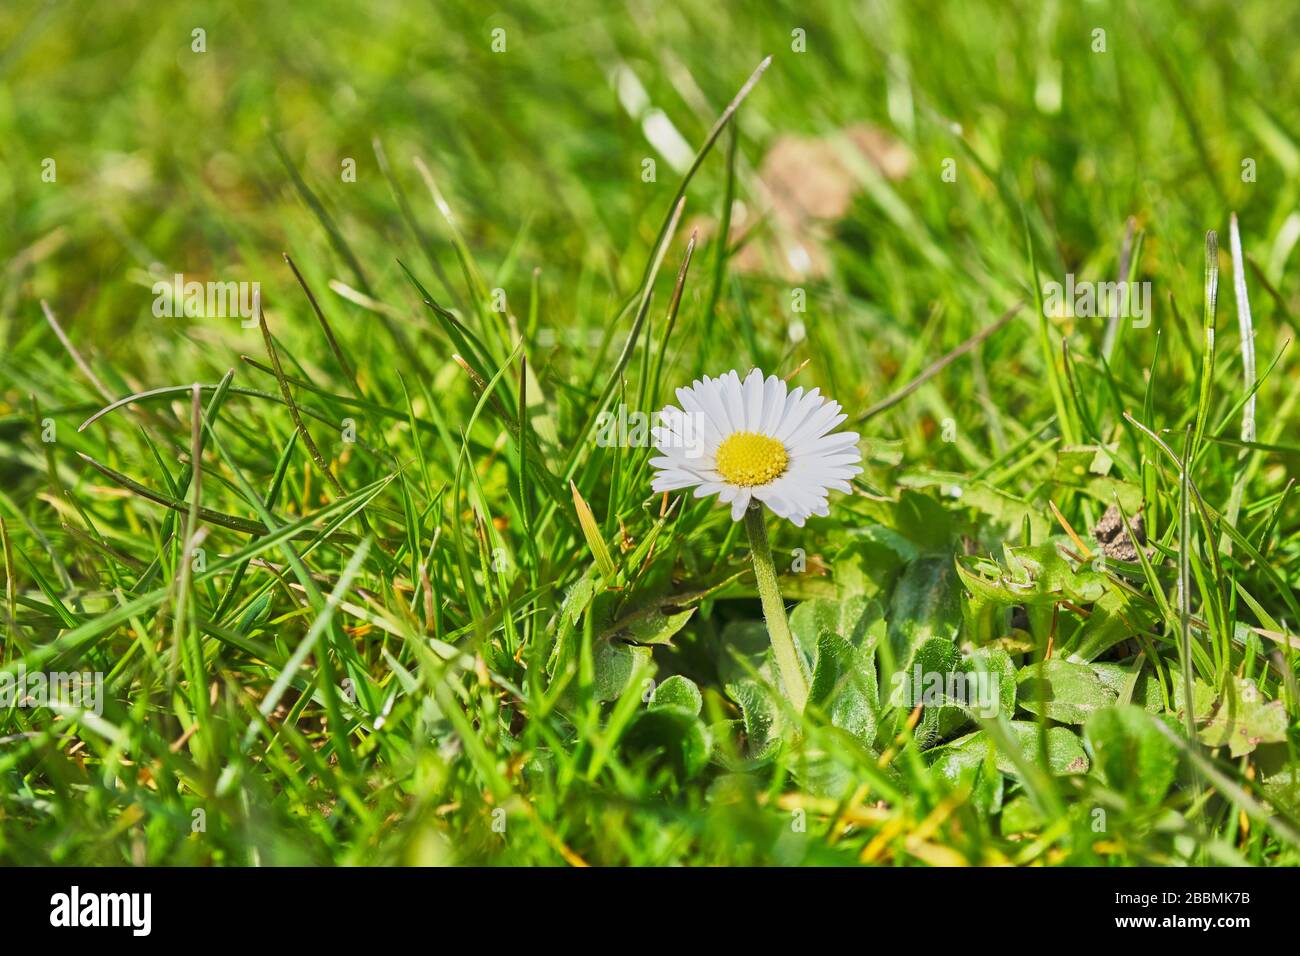 Una sola margarita común Bellis perennis flor contra una gota posterior de hierba en un césped Foto de stock